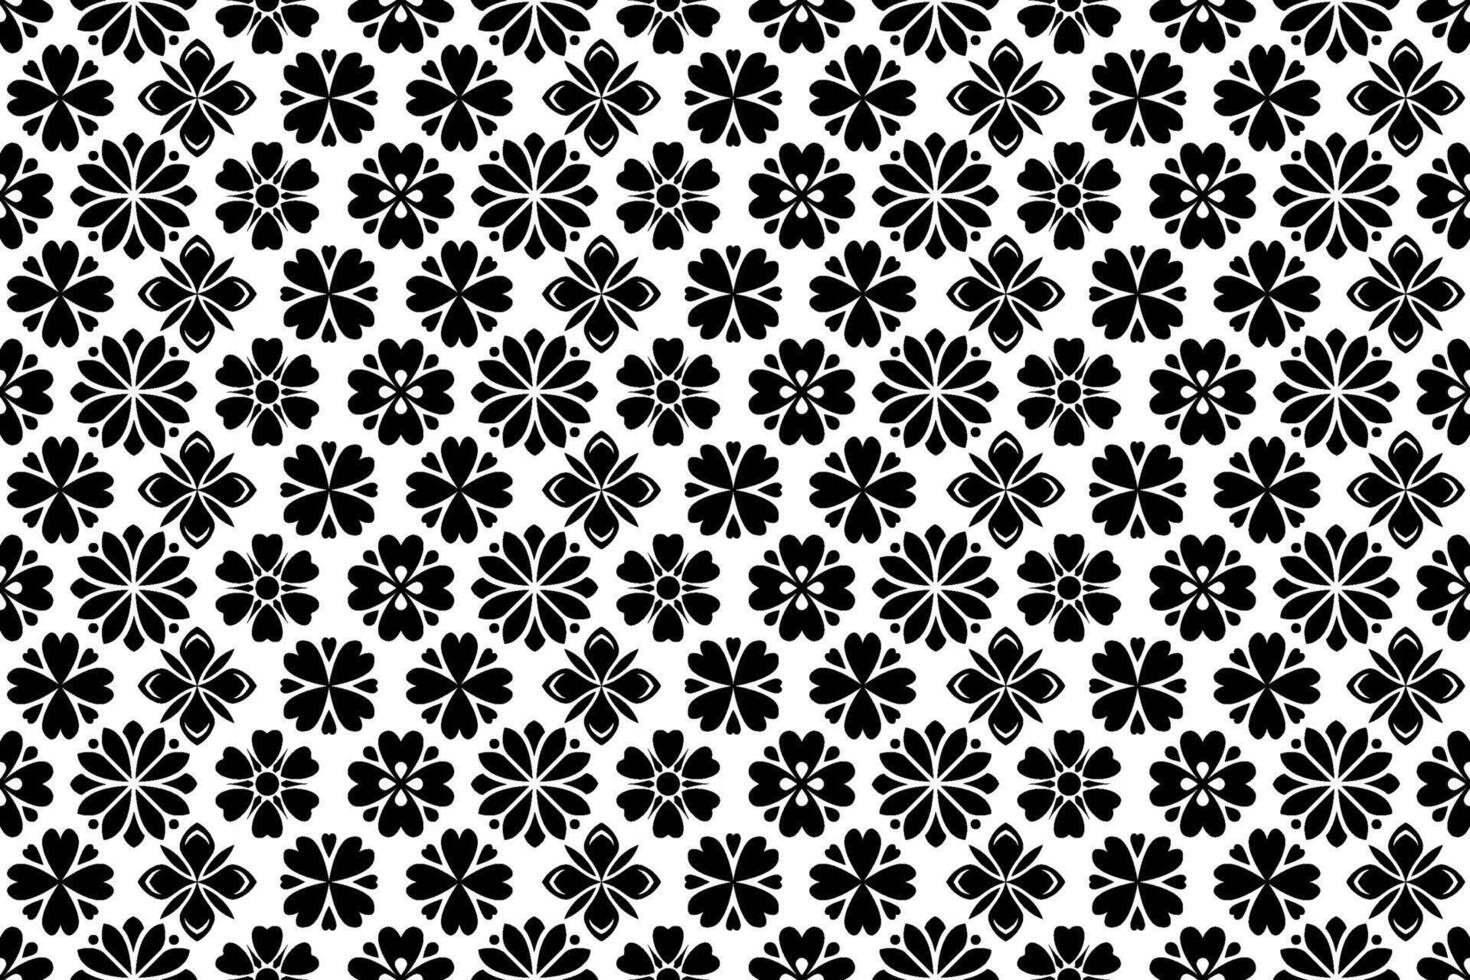 schwarz und Weiß Blumen- Muster. abstrakt nahtlos wiederholen Muster mit stilisiert Blumen. vektor